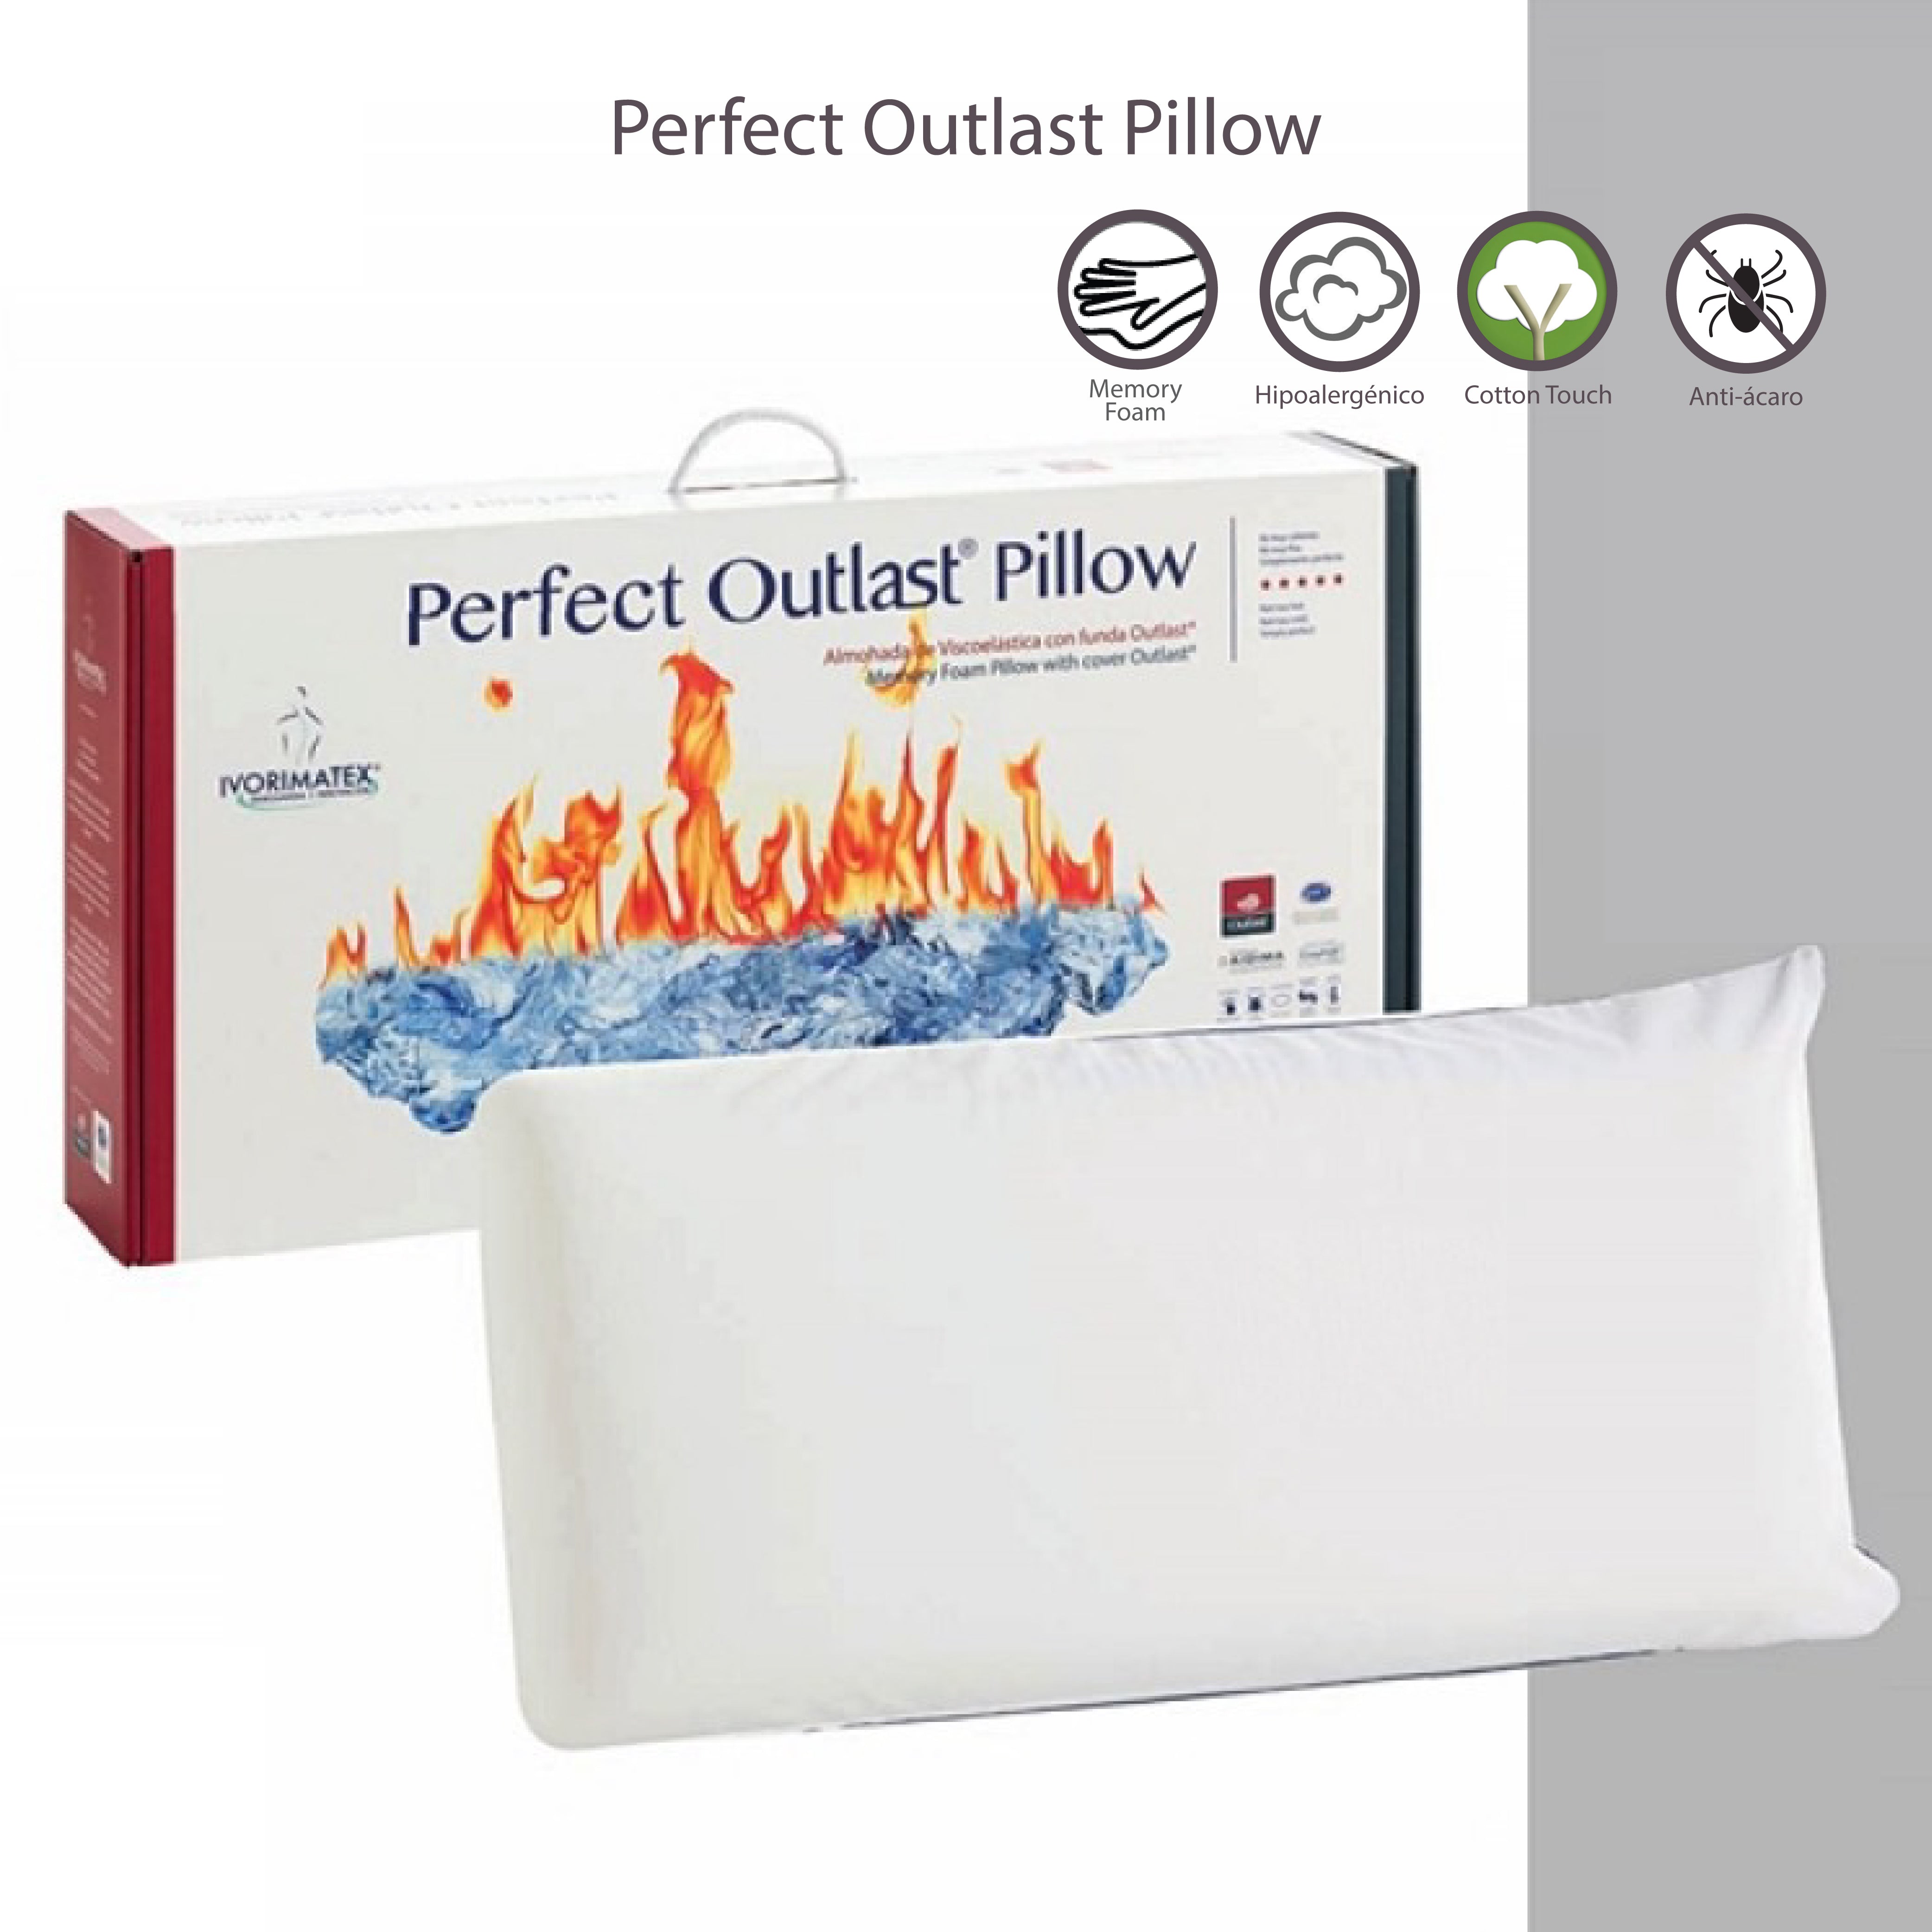 Prfect Outlast Pillow